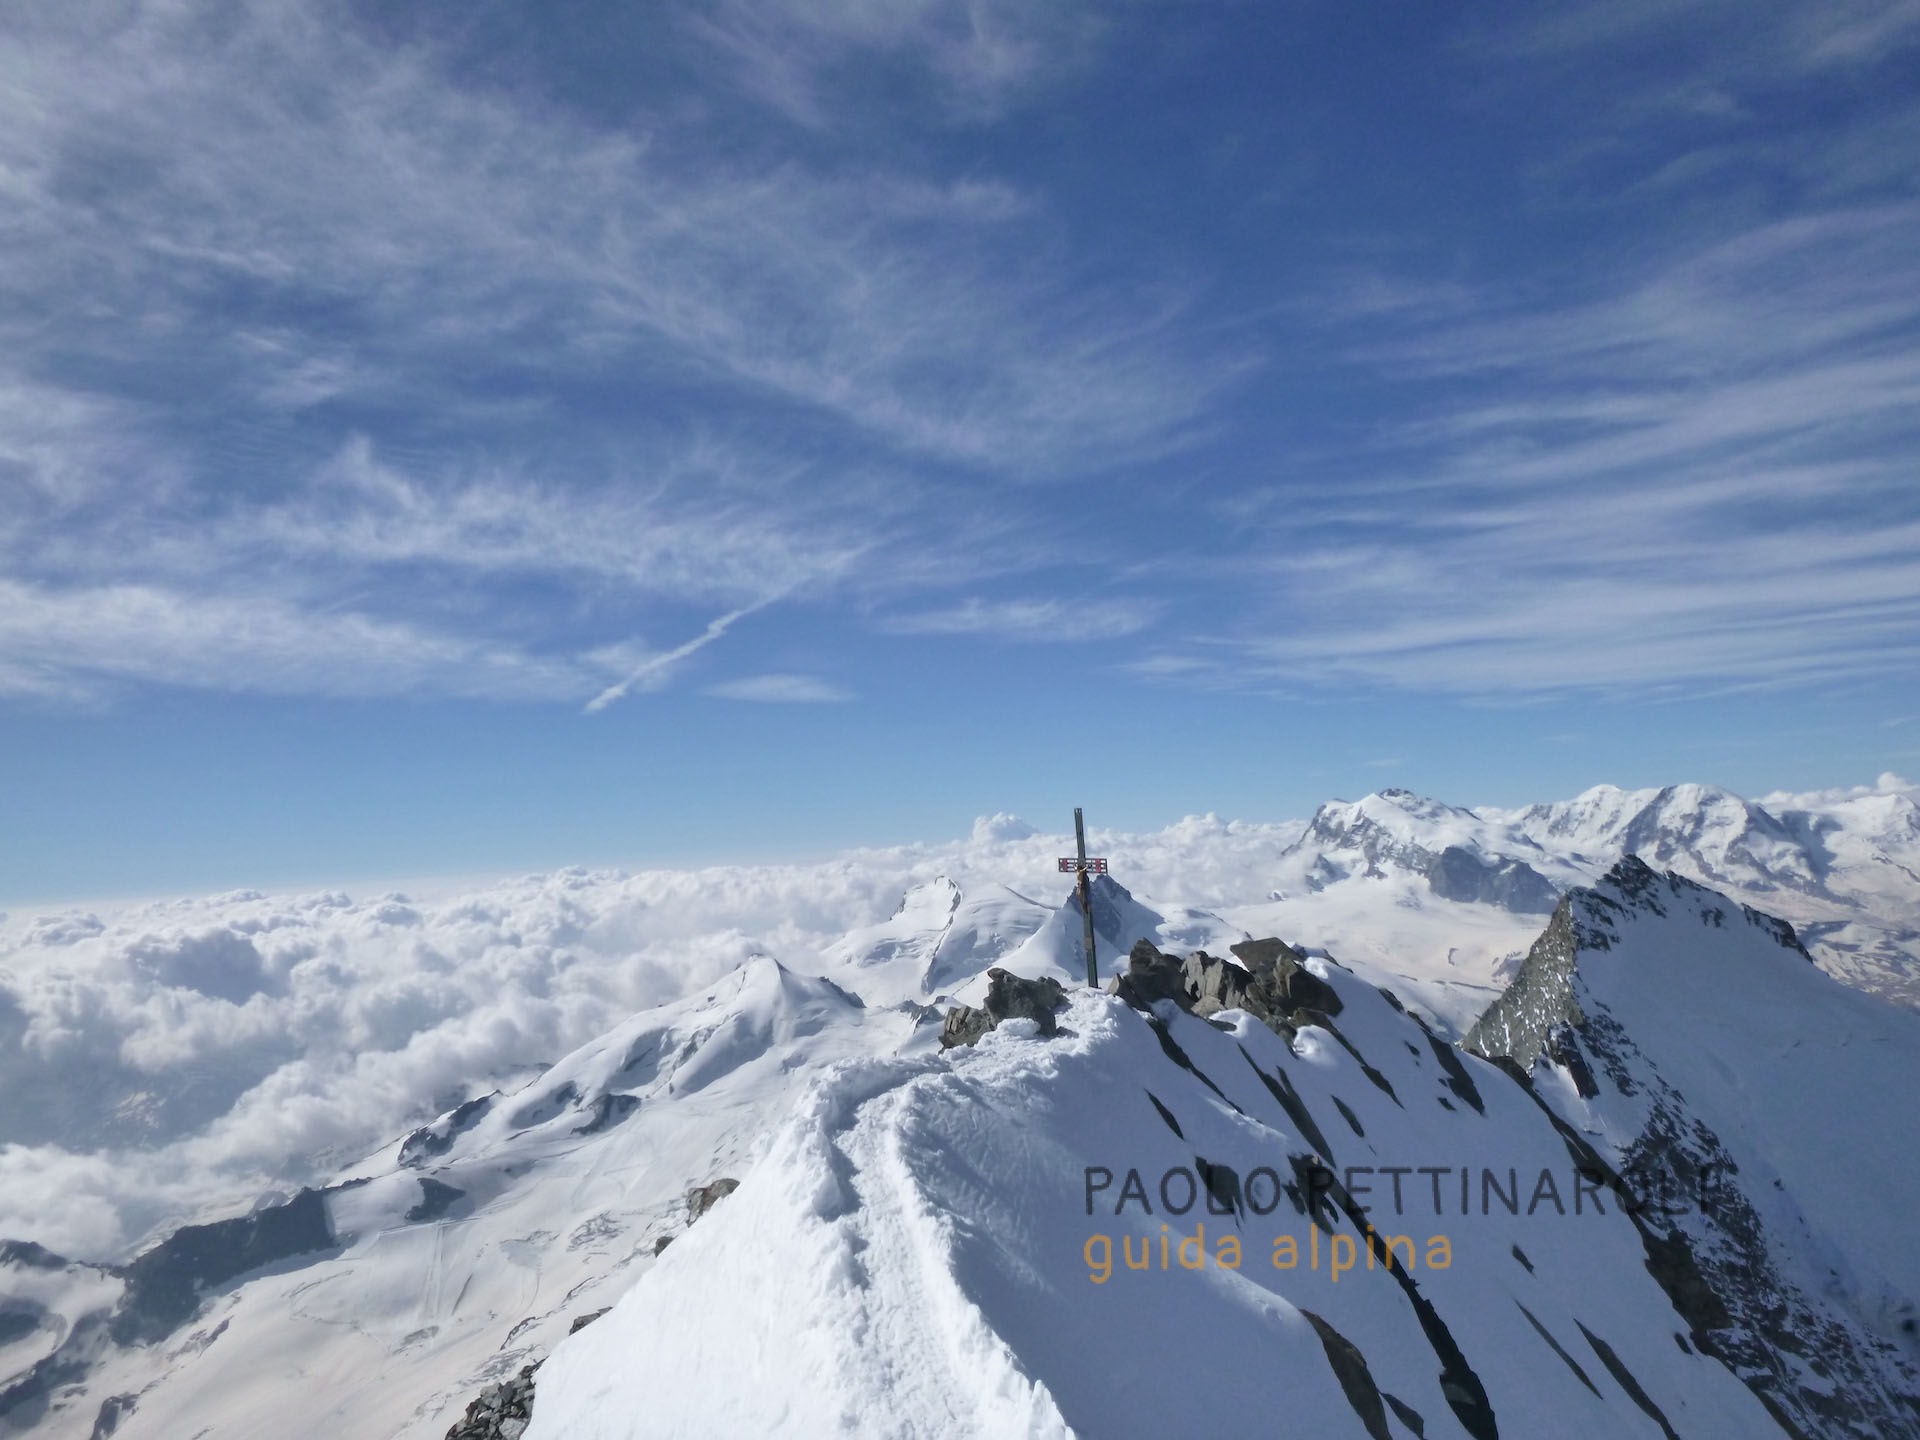 Dom - 3 di 3 - alpinismo_paolo pettinaroli guida alpina